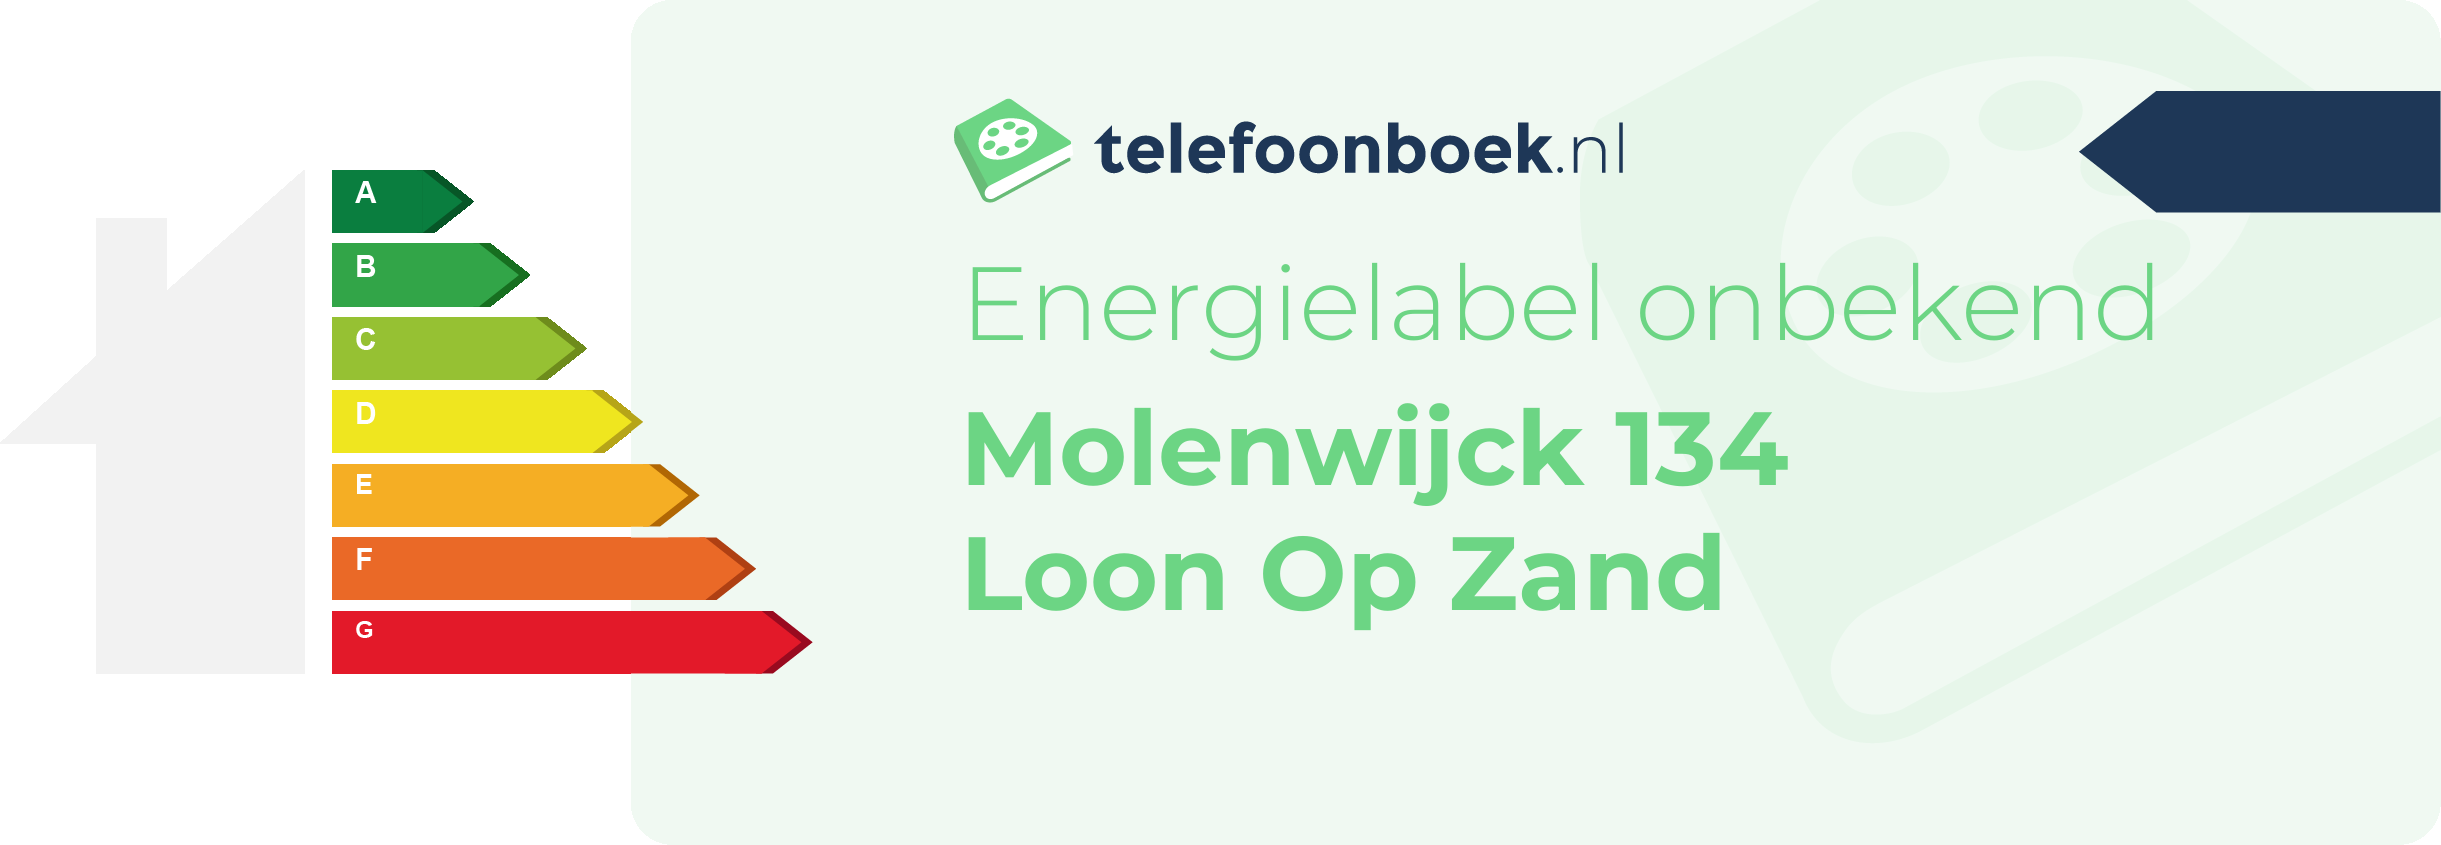 Energielabel Molenwijck 134 Loon Op Zand